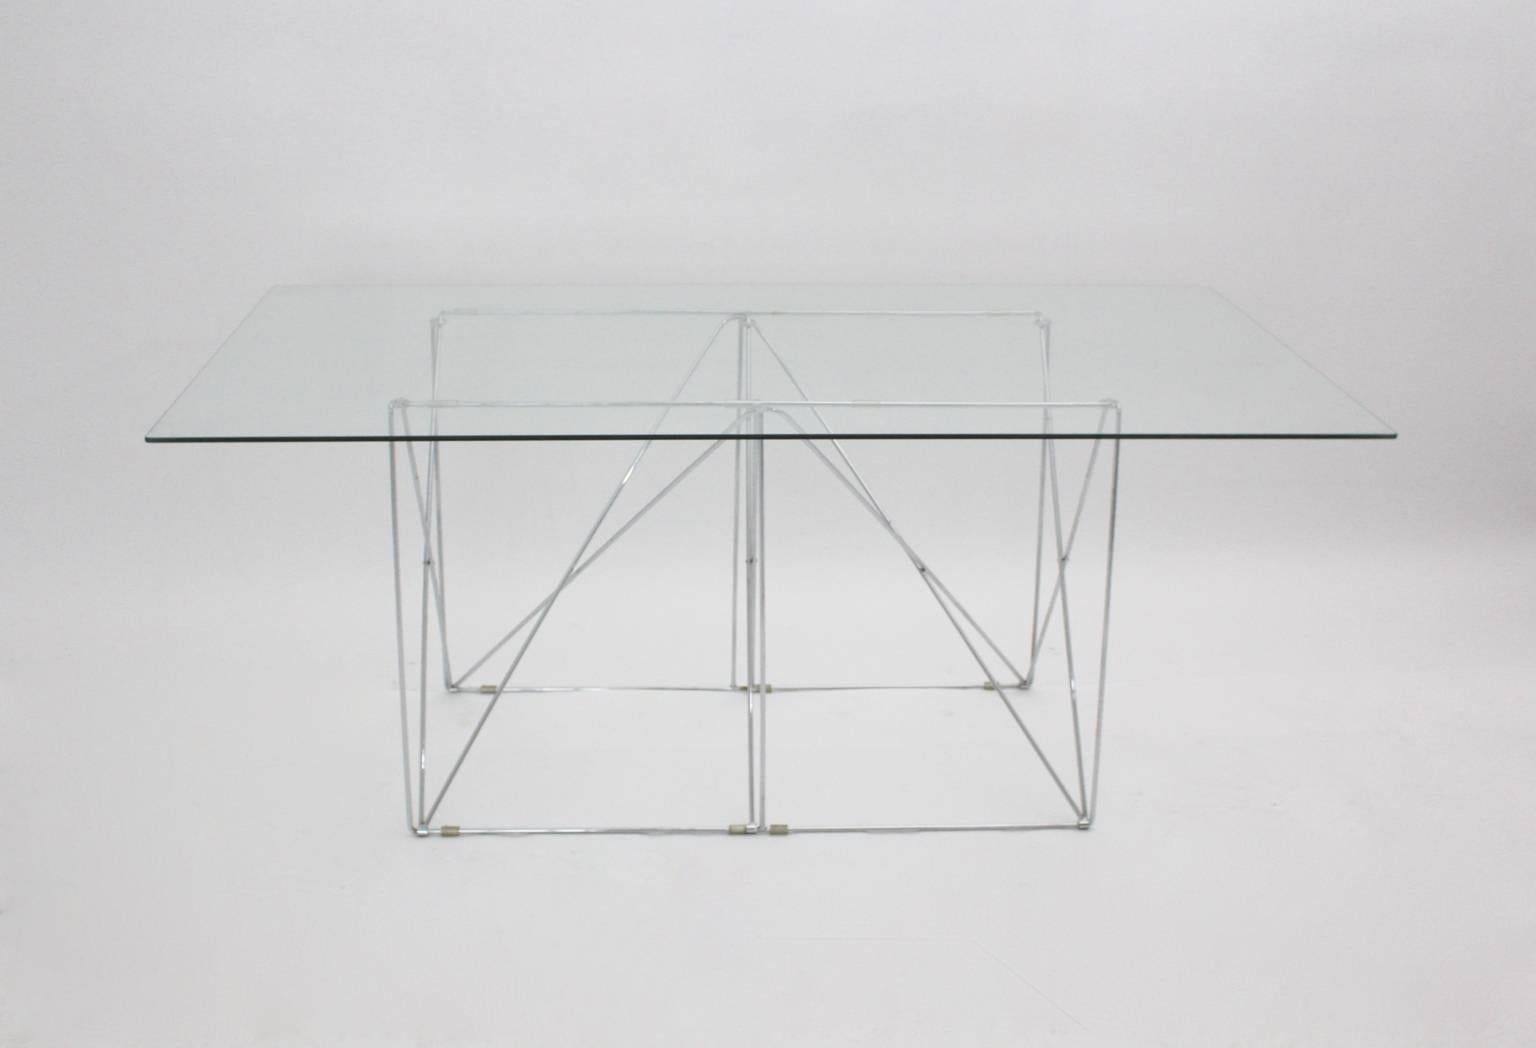 Mid Century Modern Vintage Esstisch, der eine fantastische faltbare verchromte Metallkonstruktion mit einer klaren Glasplatte (Dicke 0,32 in = 0,8 cm) ist.
Dieser minimalistische Schreibtisch oder Esstisch wurde von Max Sauze um 1970